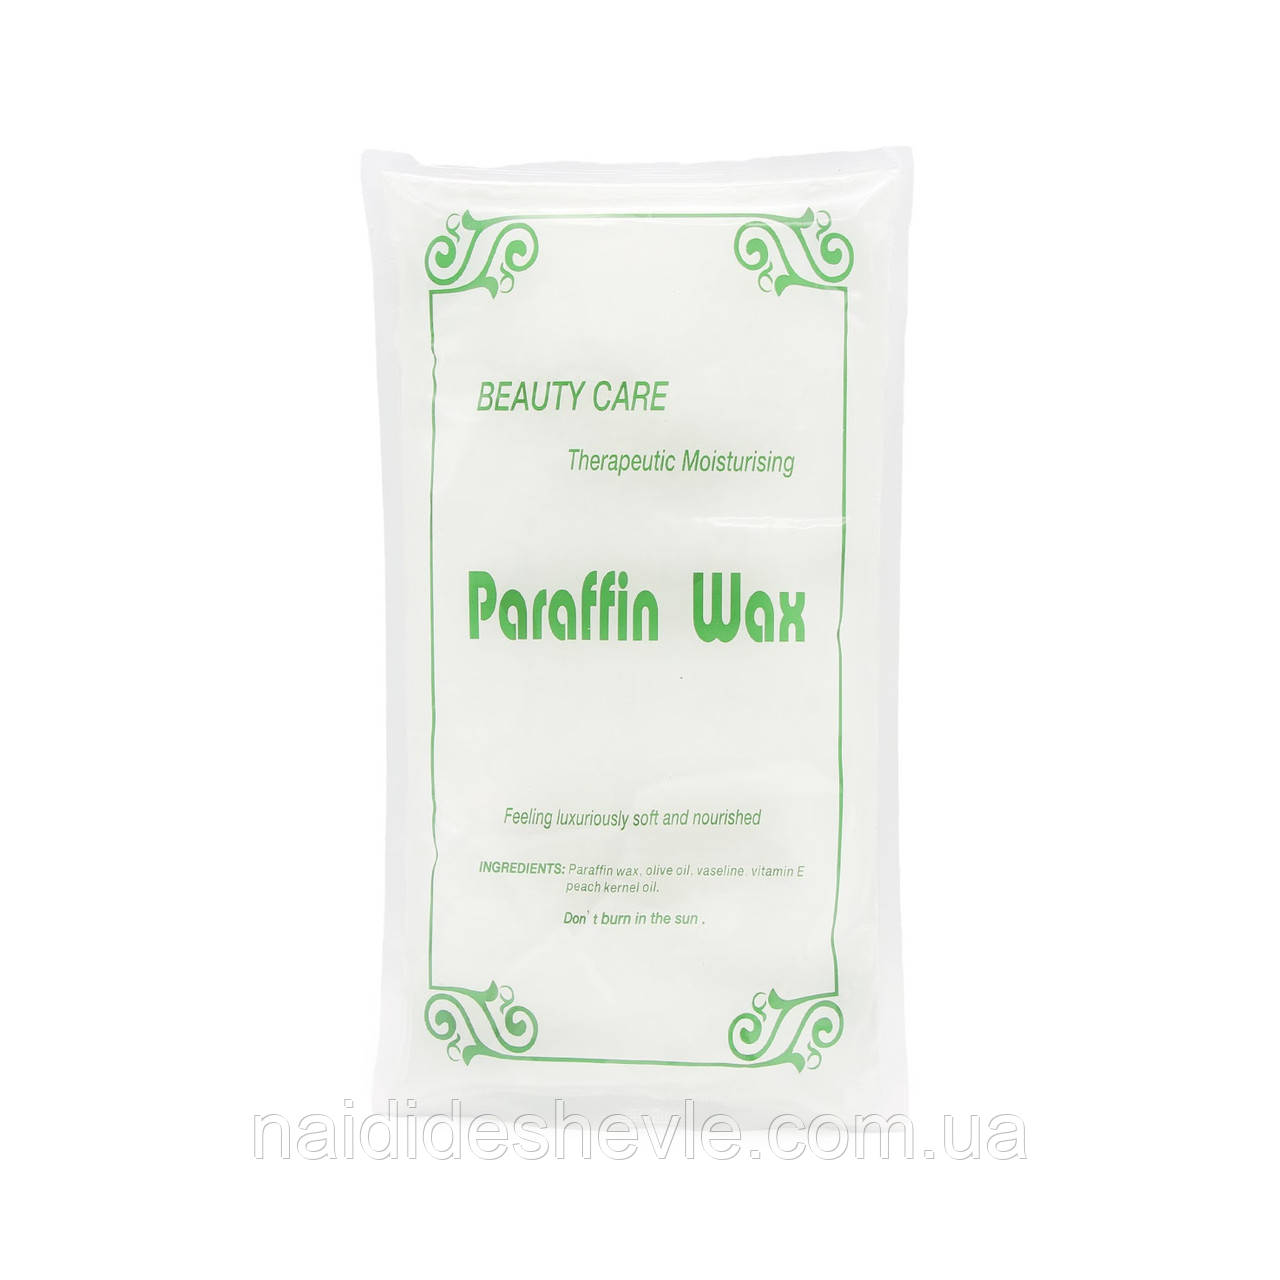 Косметичний парафін Paraffin Wax для парафінотерапії, 450г. Молочний